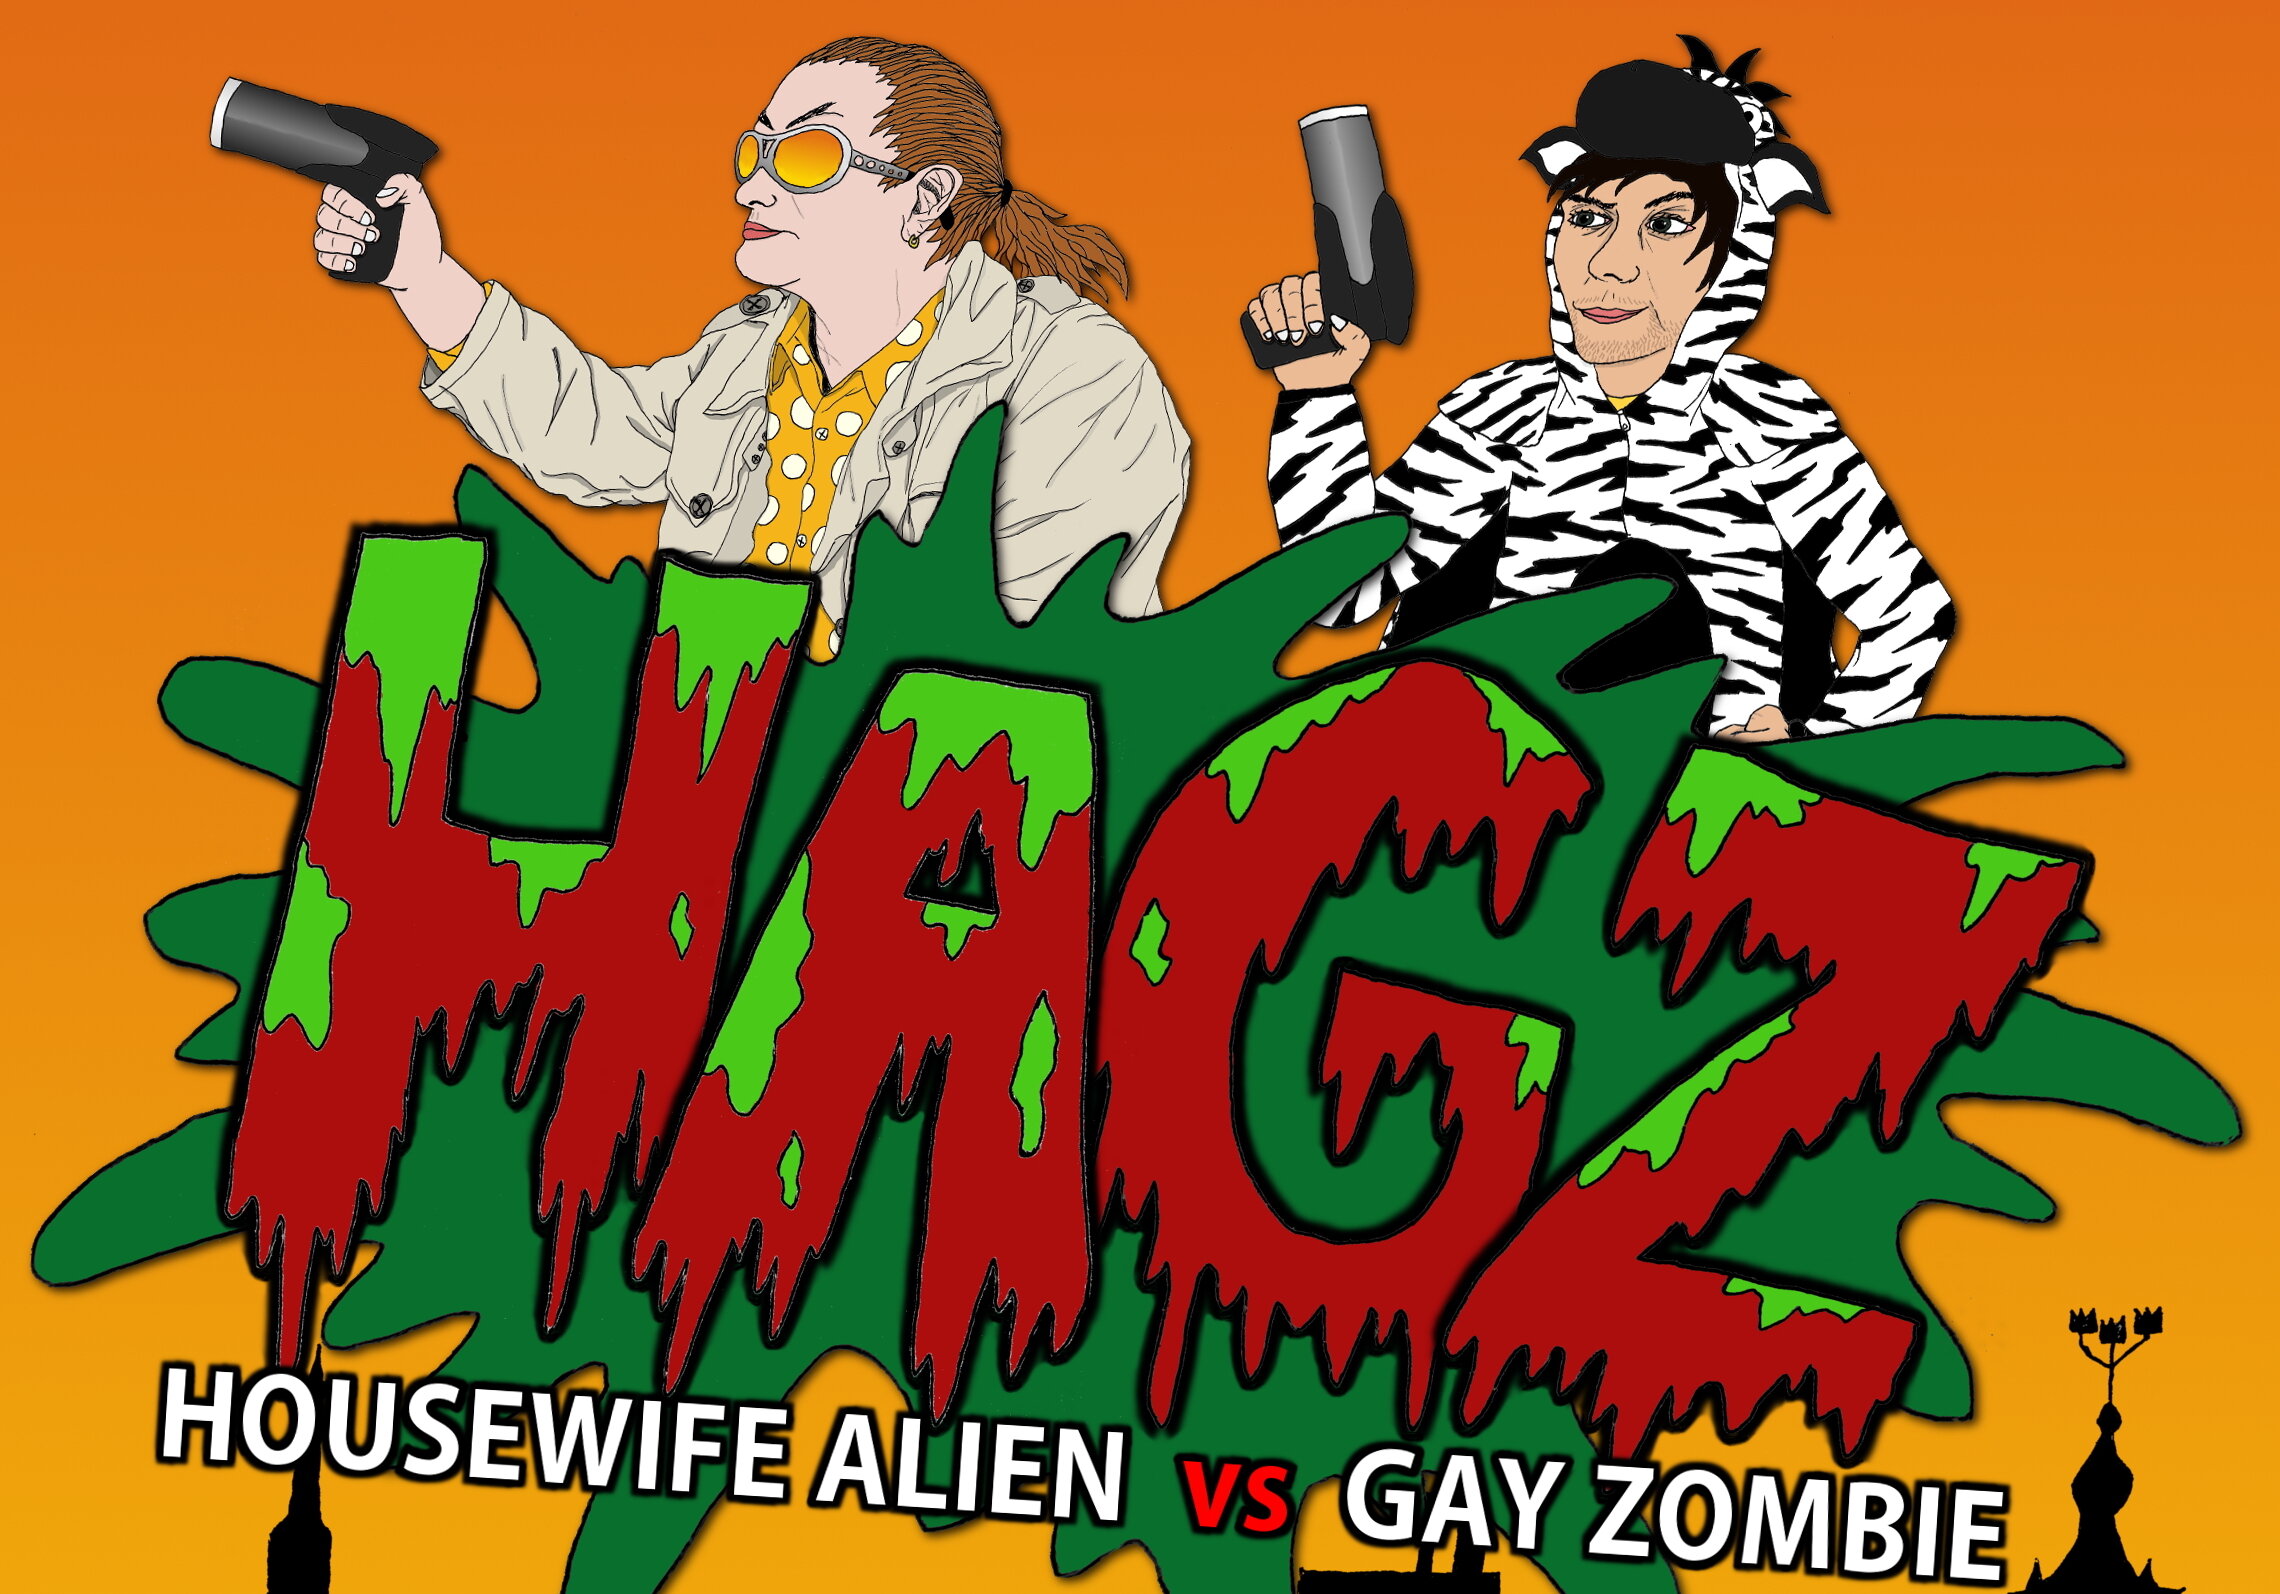 Housewife Alien Vs Gay Zombie Movie Fun.jpg